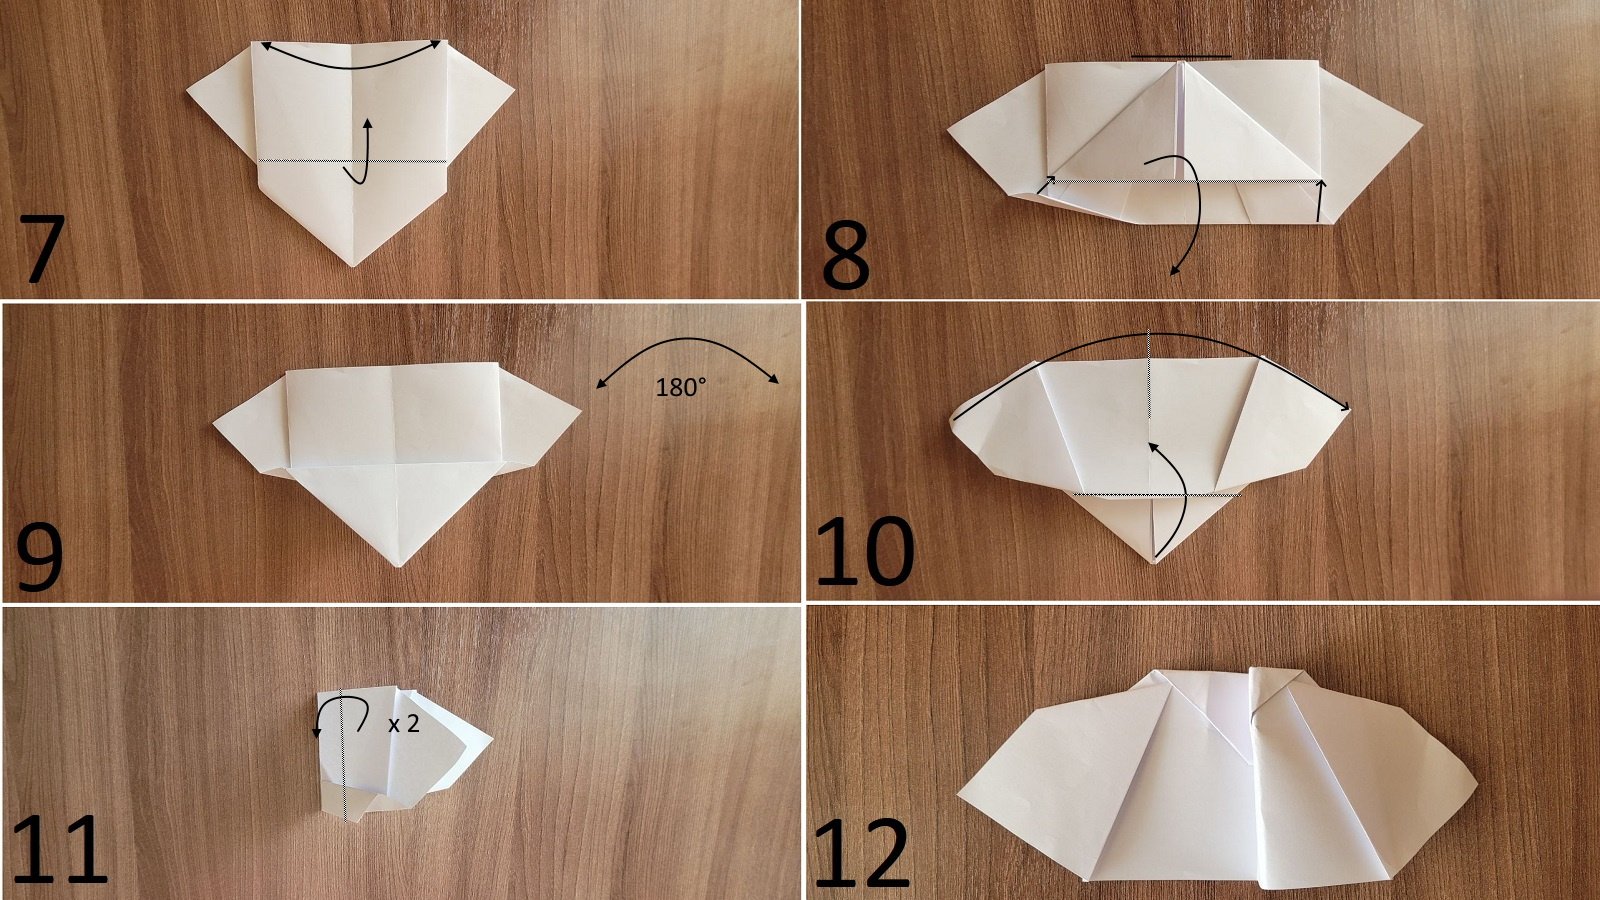 Оригами как искусство | Публикации | Вся ручная работа на HandsForYou